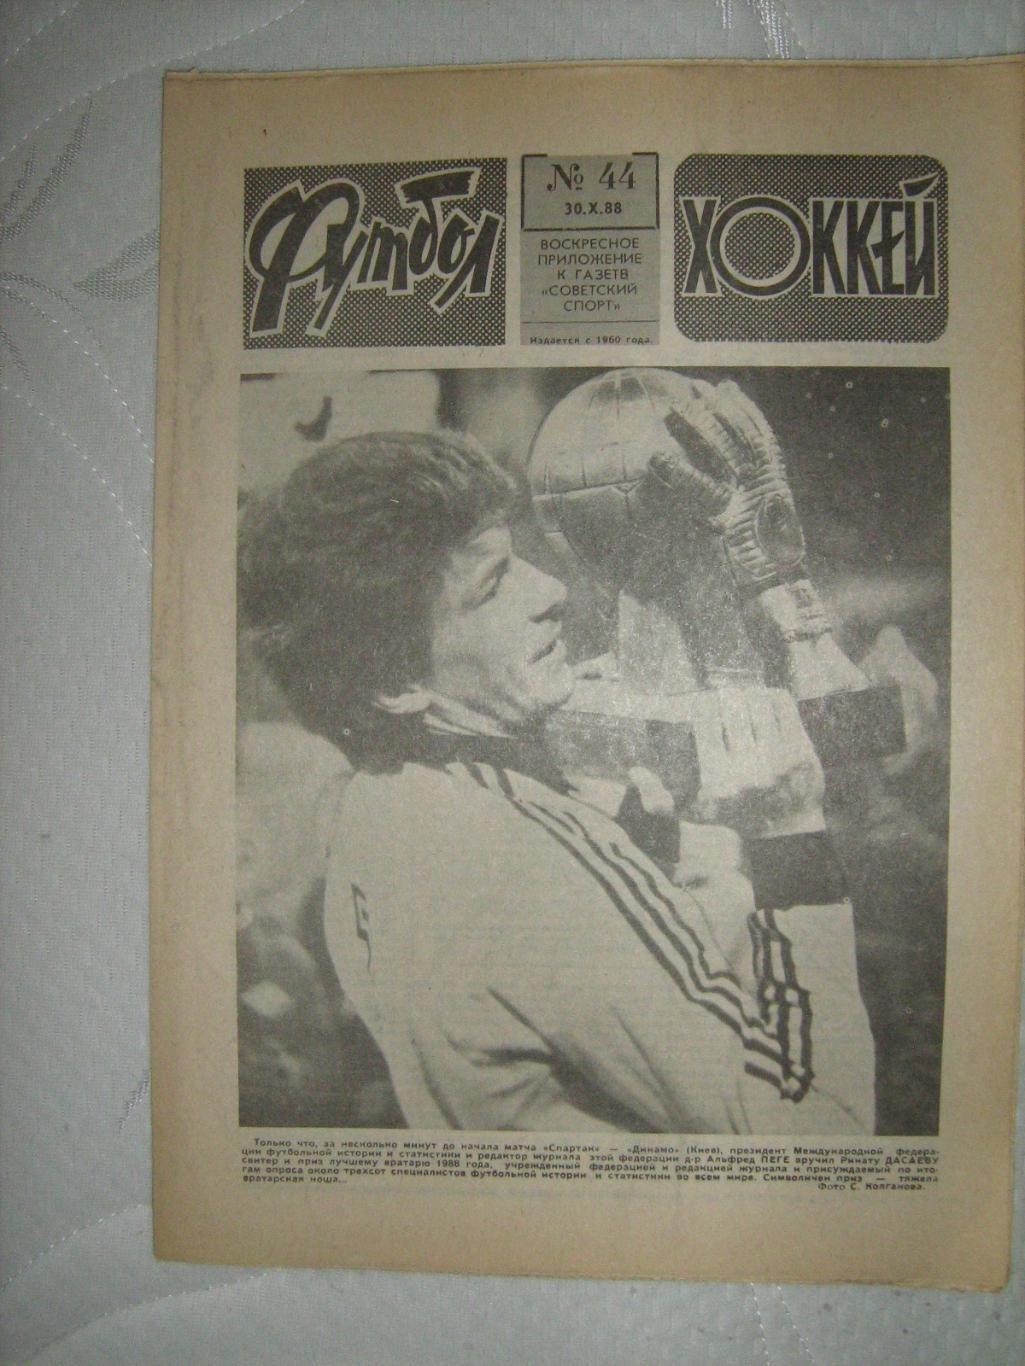 Еженедельник Футбол -Хоккей - 1988(44,42,41,34,39,33,23,27)